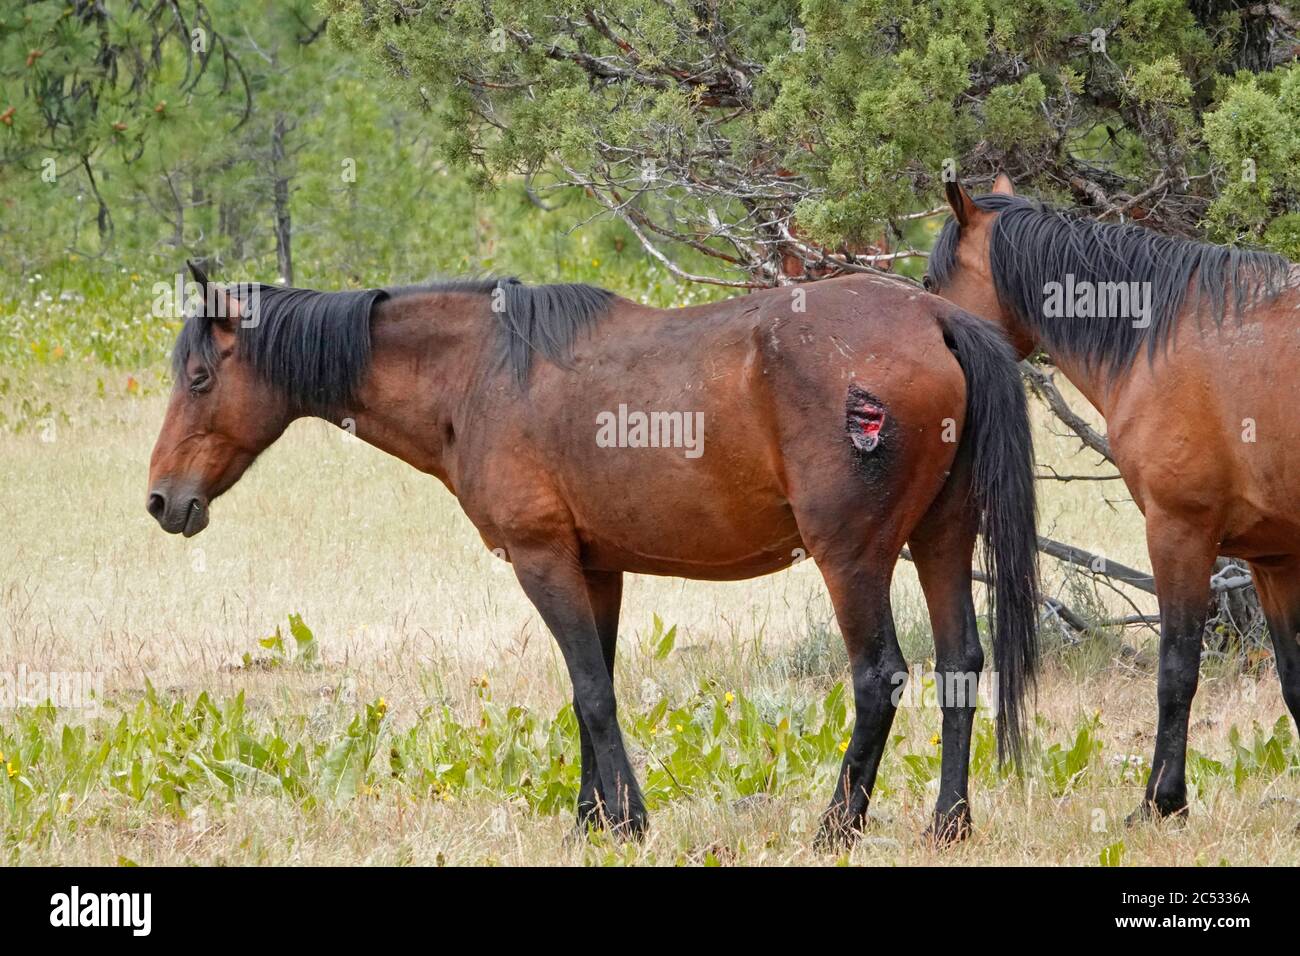 Les chevaux sauvages du sanctuaire équestre sauvage de Ochoco Mountain dans les montagnes Ochoco du centre de l'Oregon, flânent librement sur des milliers d'hectares de pins, de sapins, d'an Banque D'Images